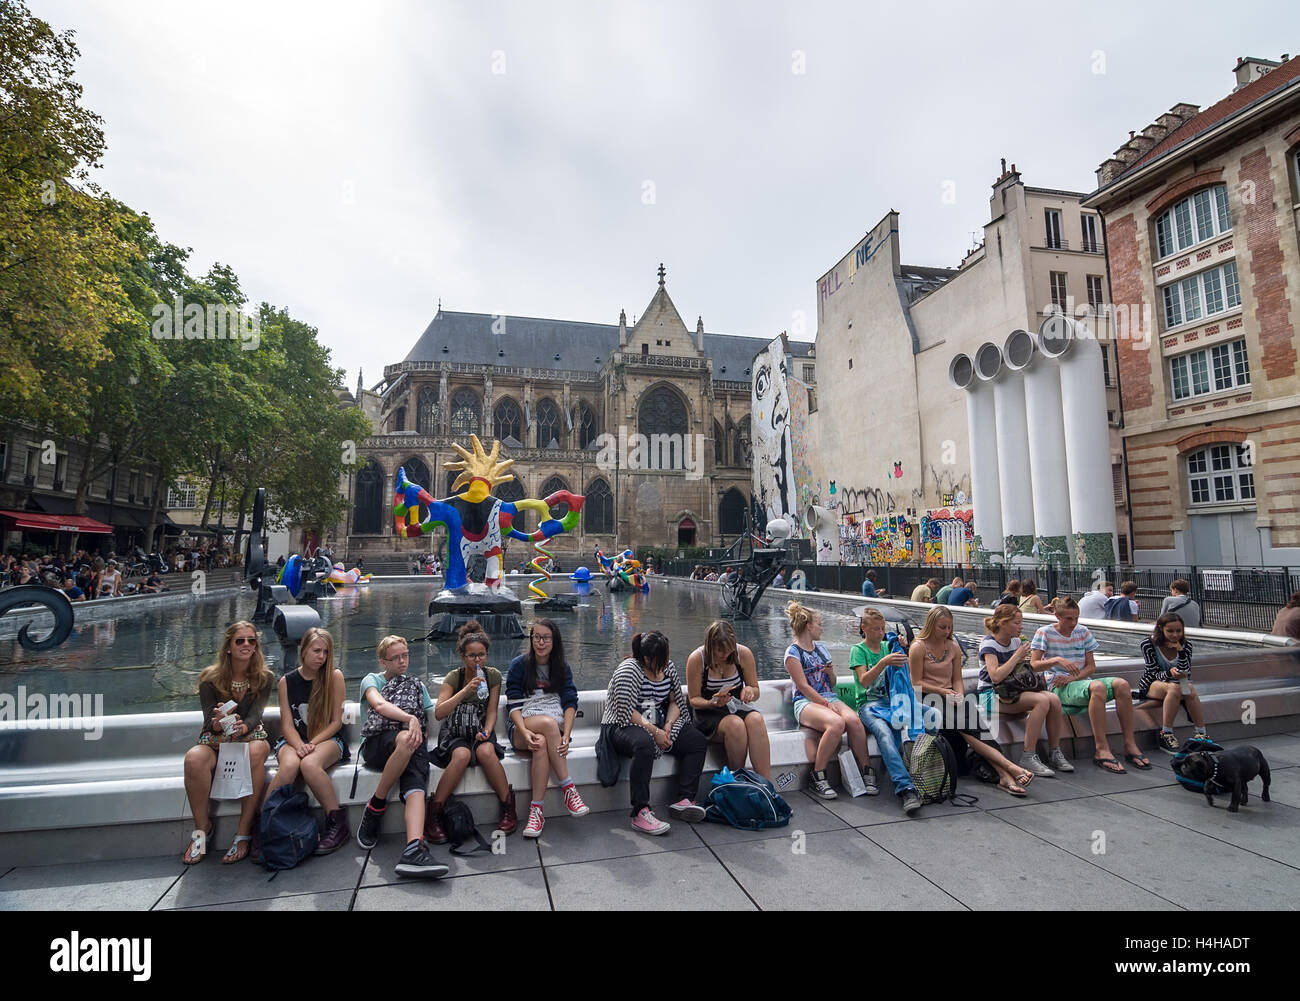 Parigi - 17 settembre 2014: La Fontana Stravinsky è una bizzarra fontana pubblica ornata con 16 opere di scultura. Foto Stock